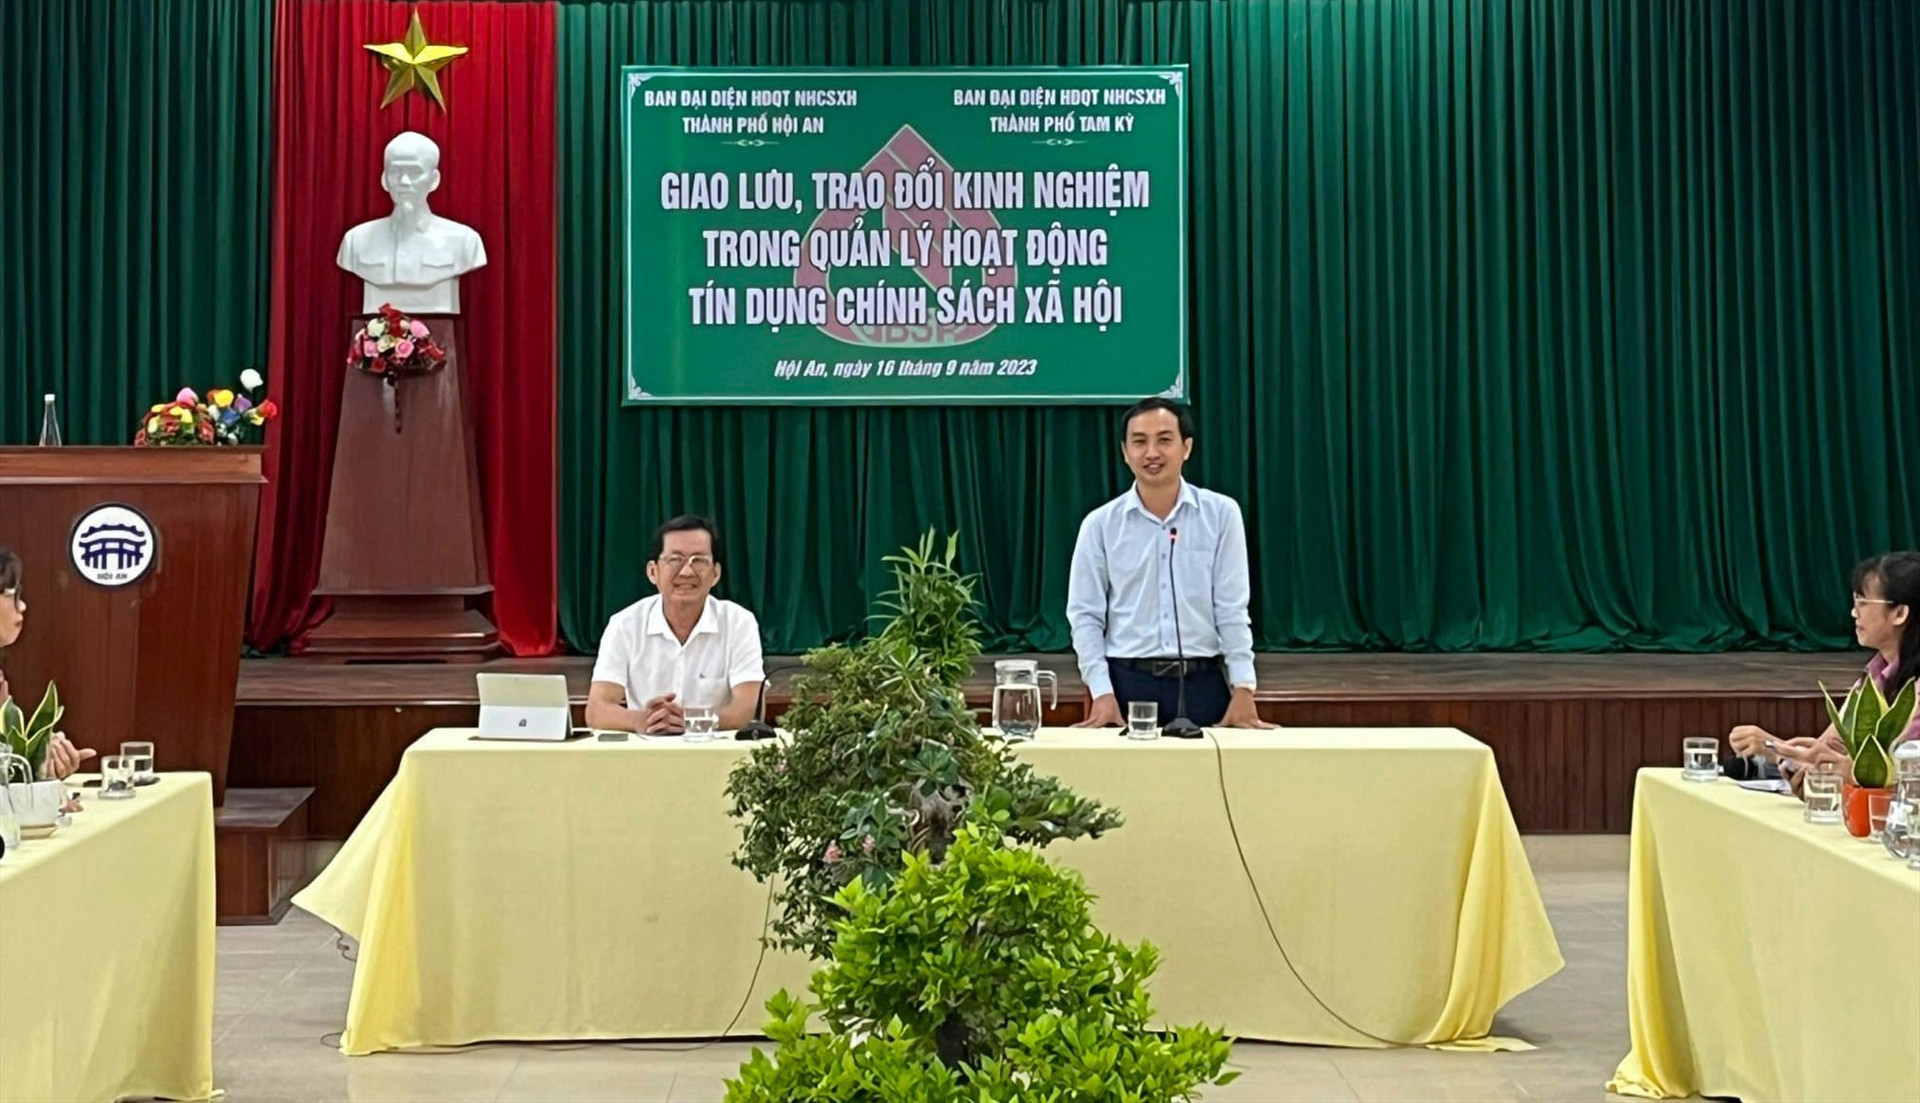 Ông Nguyễn Hồng Lai - Phó Chủ UBND -Trưởng BĐD HĐQT NHCSXH TP. Tam Kỳ phát biểu tại buổi giao lưu